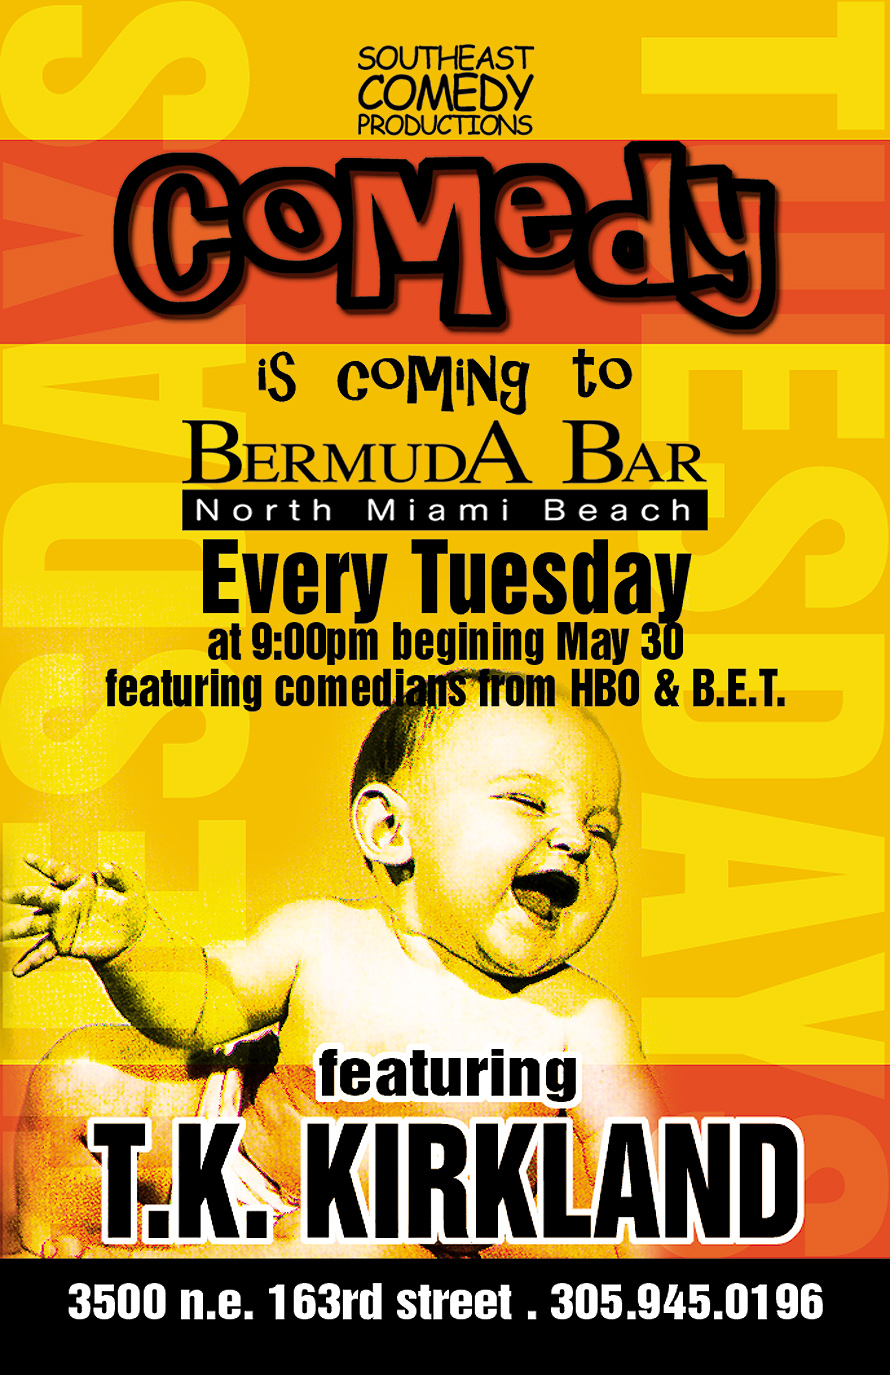 Comedy Night at Bermuda Bar